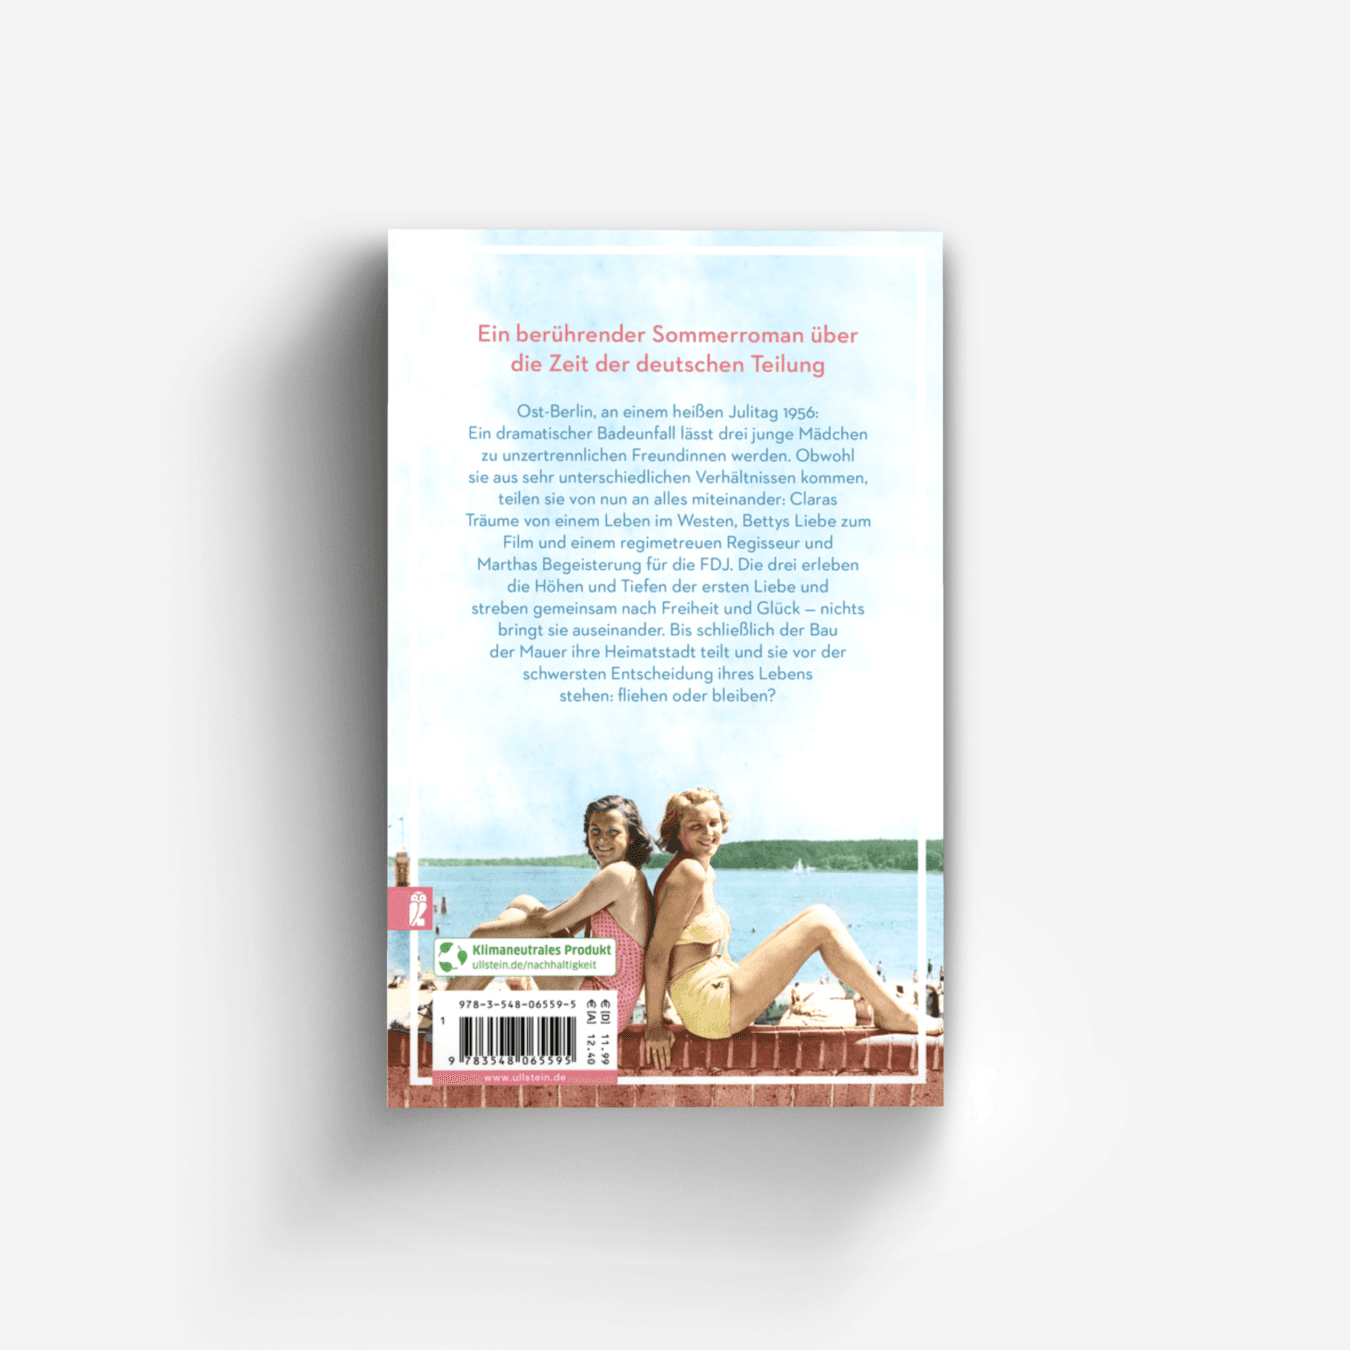 Buchcover von Die Freundinnen vom Strandbad (Die Müggelsee-Saga 1)